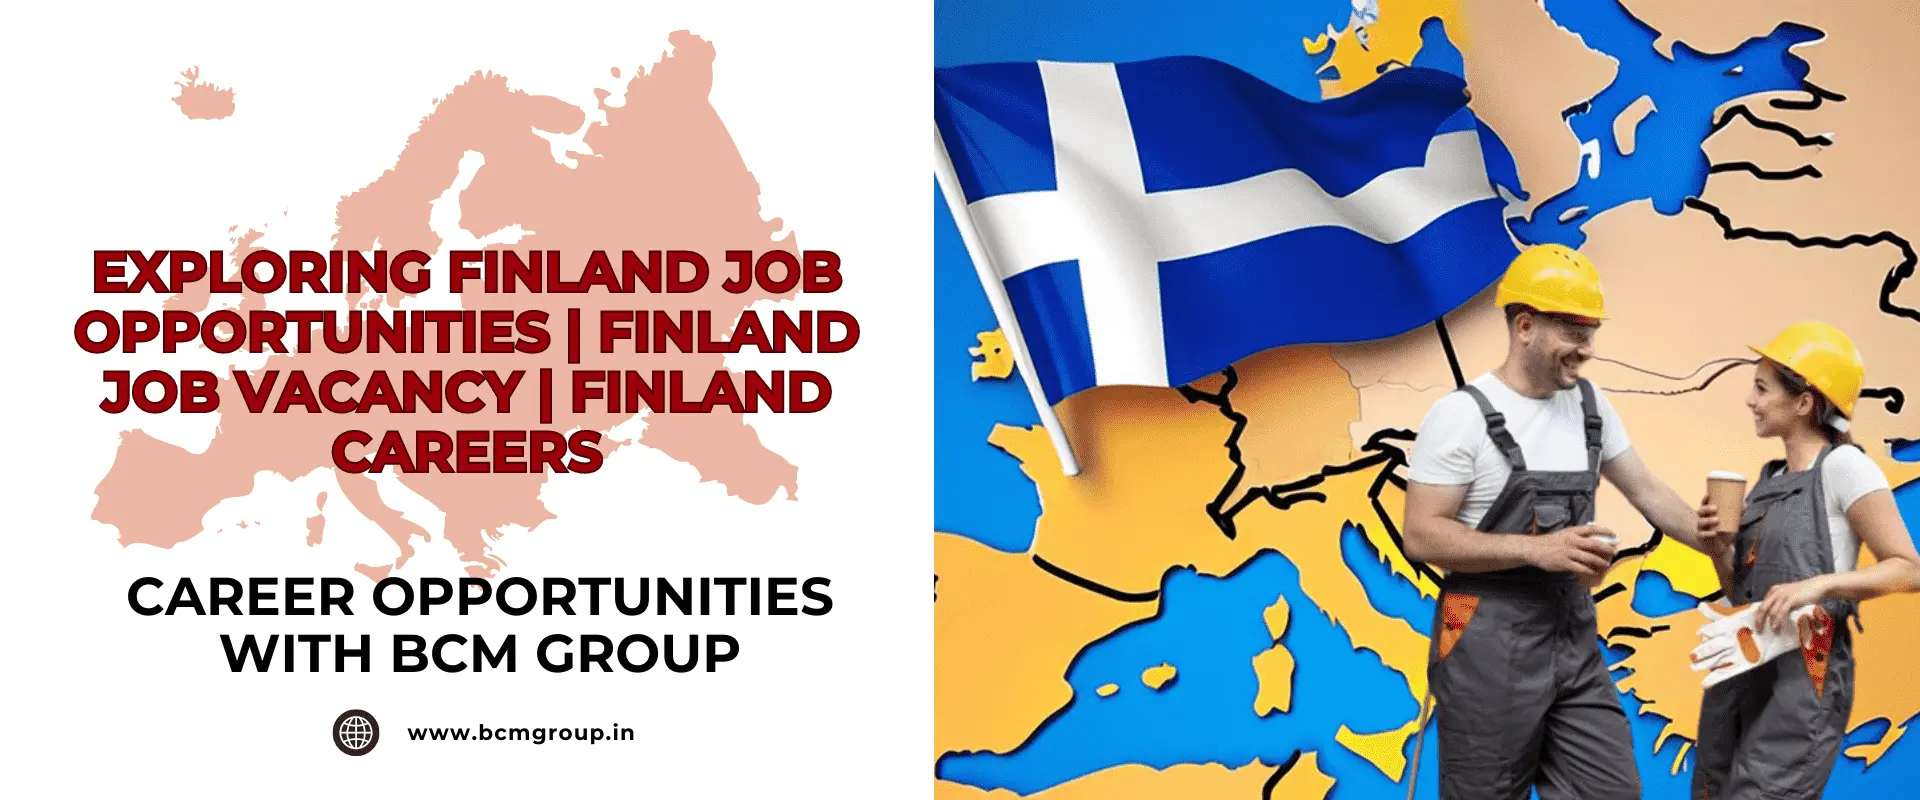 EXPLORING FINLAND JOB OPPORTUNITIES | FINLAND JOB VACANCY | FINLAND CAREERS